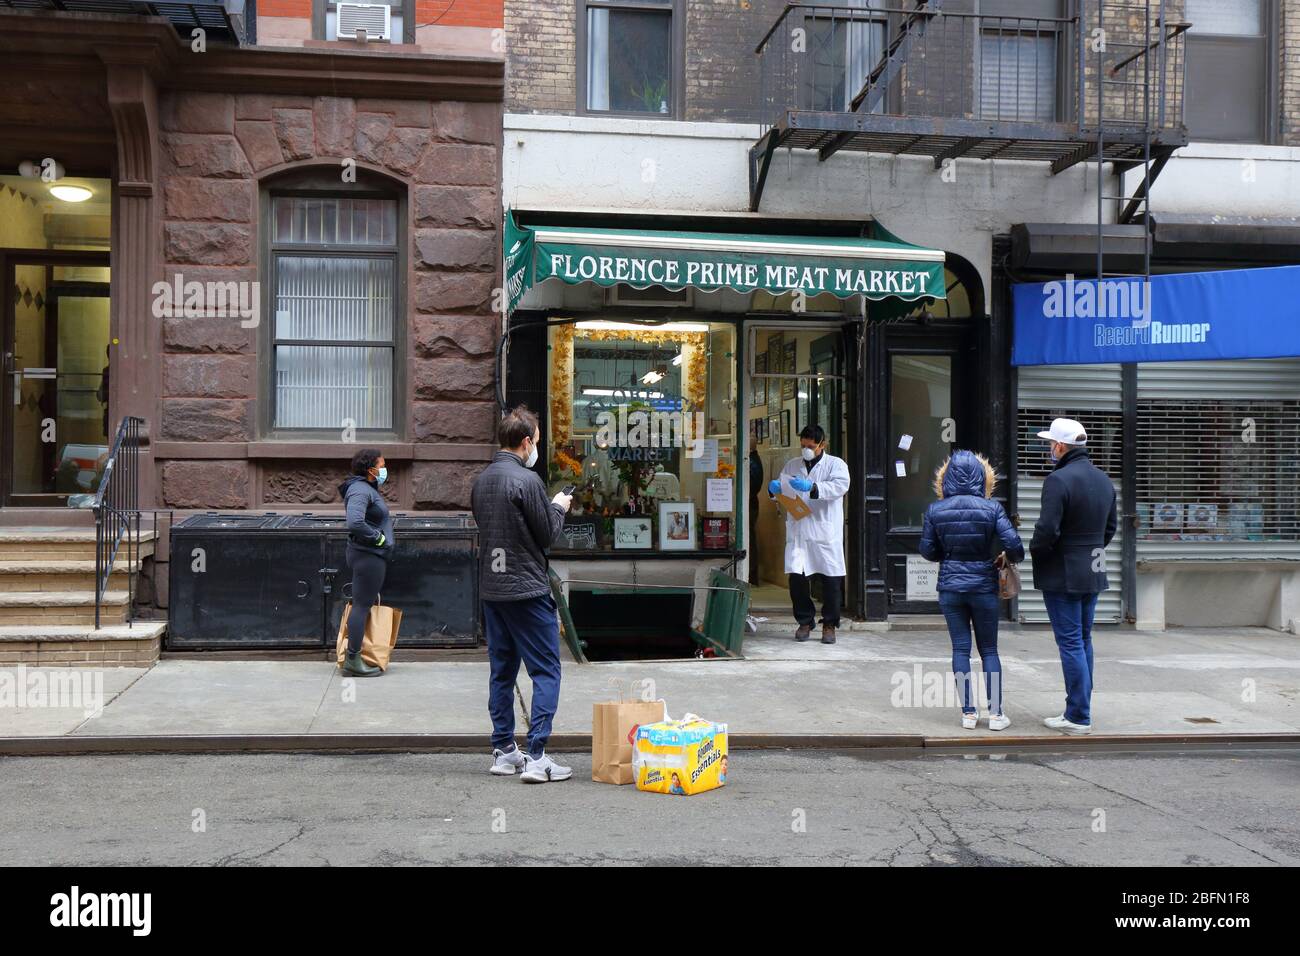 Menschen sozialen Distanzen und tragen Masken, wie sie warten, um eine Metzgerei während Coronavirus COVID-19 betreten. New York, 18. April 2020. Stockfoto